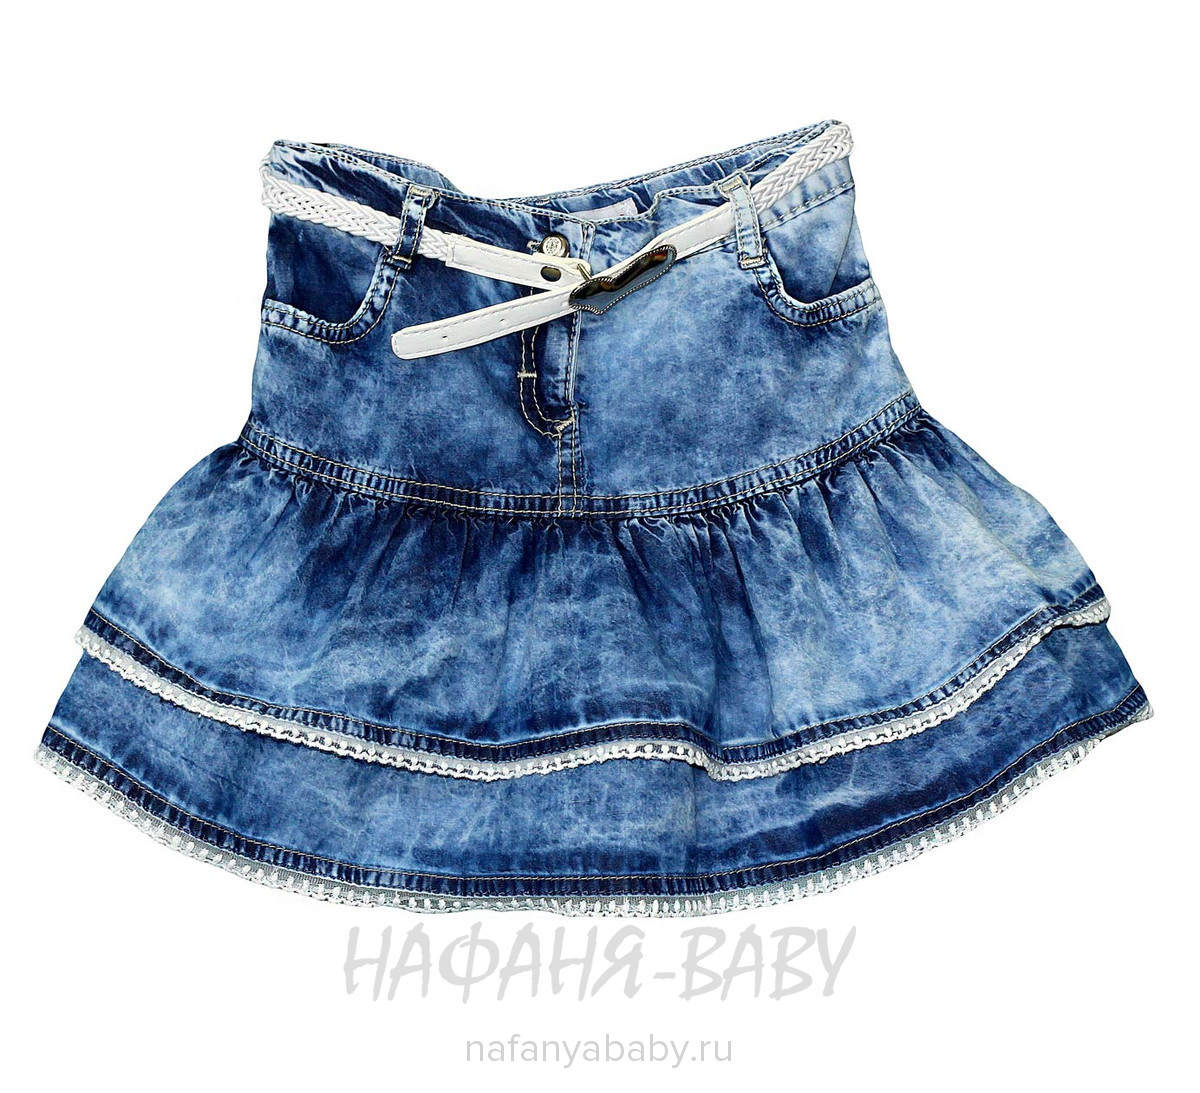 Детская джинсовая юбка SANI, купить в интернет магазине Нафаня. арт: 9134.